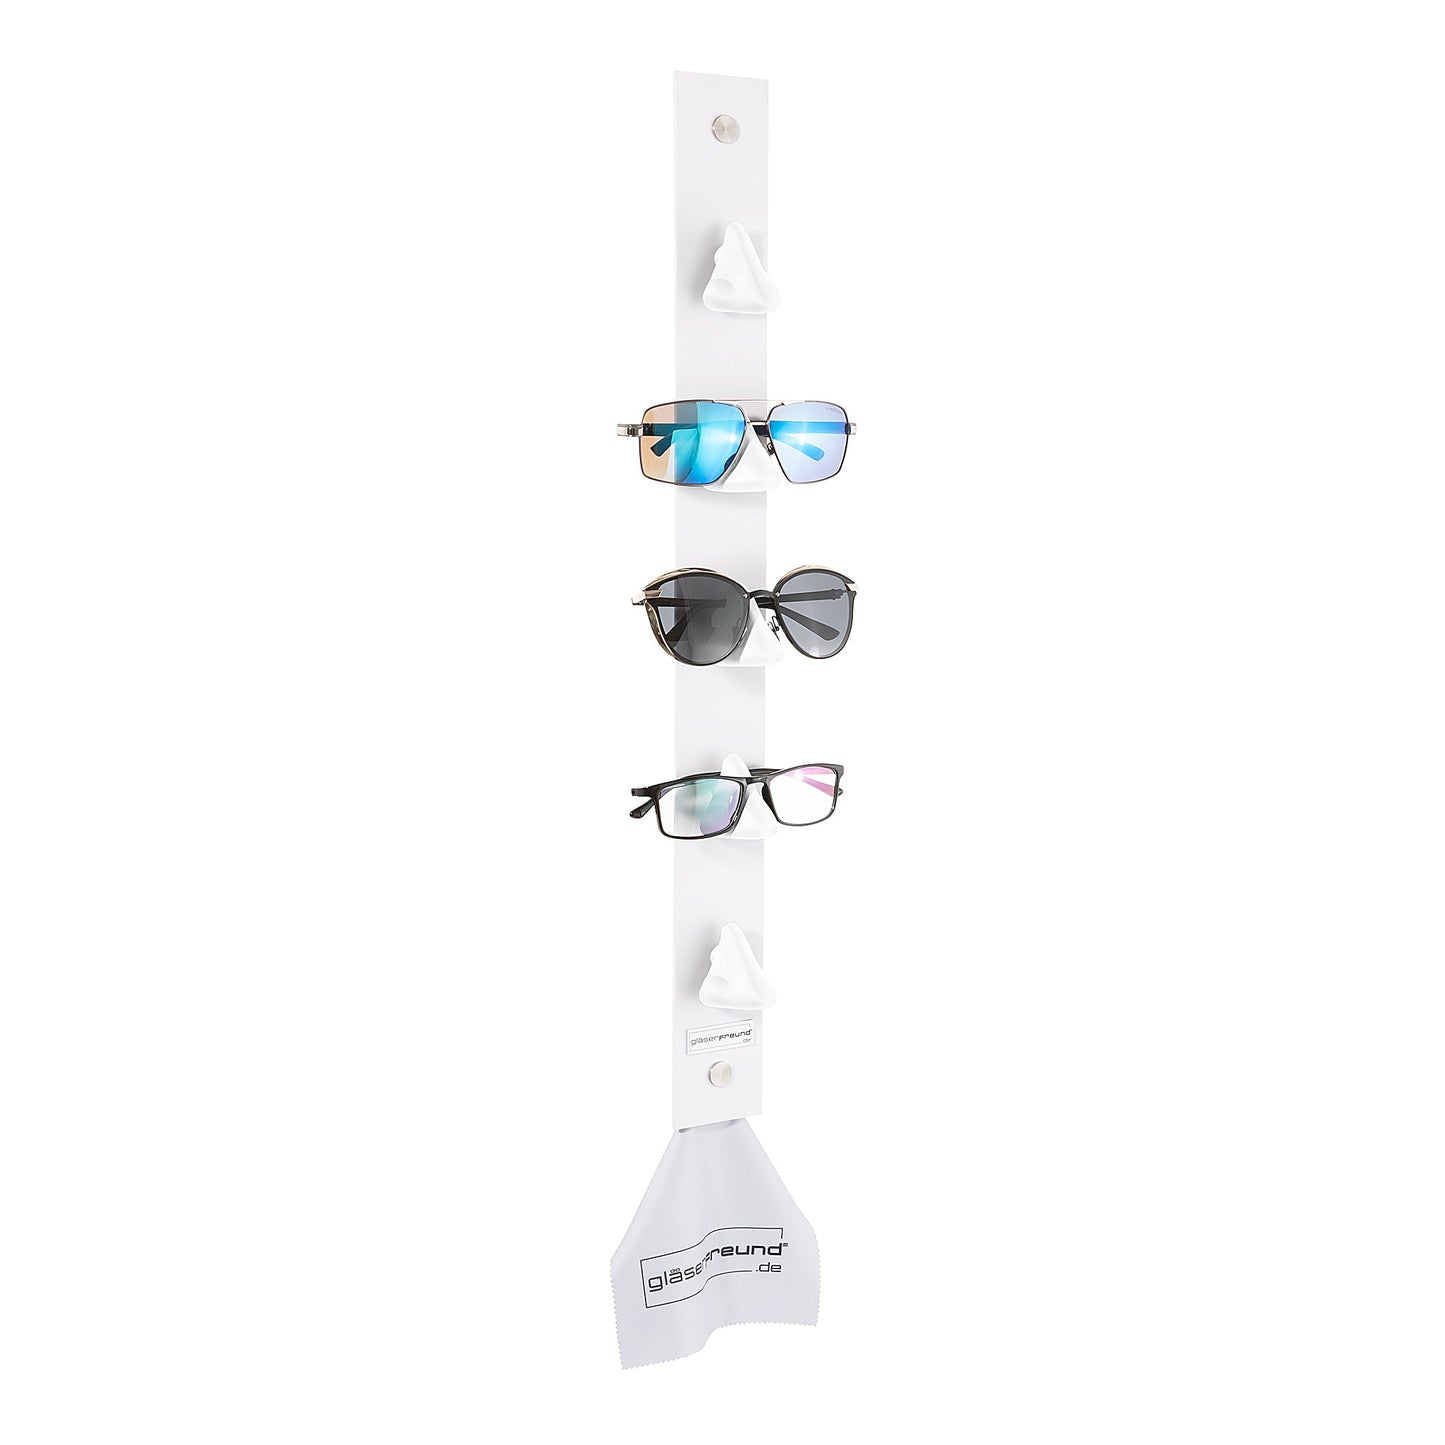 Calvin white - Brillenorganizer, Brillenhalter, Brillenhalterung, Brillenregal, Brillenständer, Brillenaufbewahrung, Brillengarderobe, Brillenablage und Brillengarage